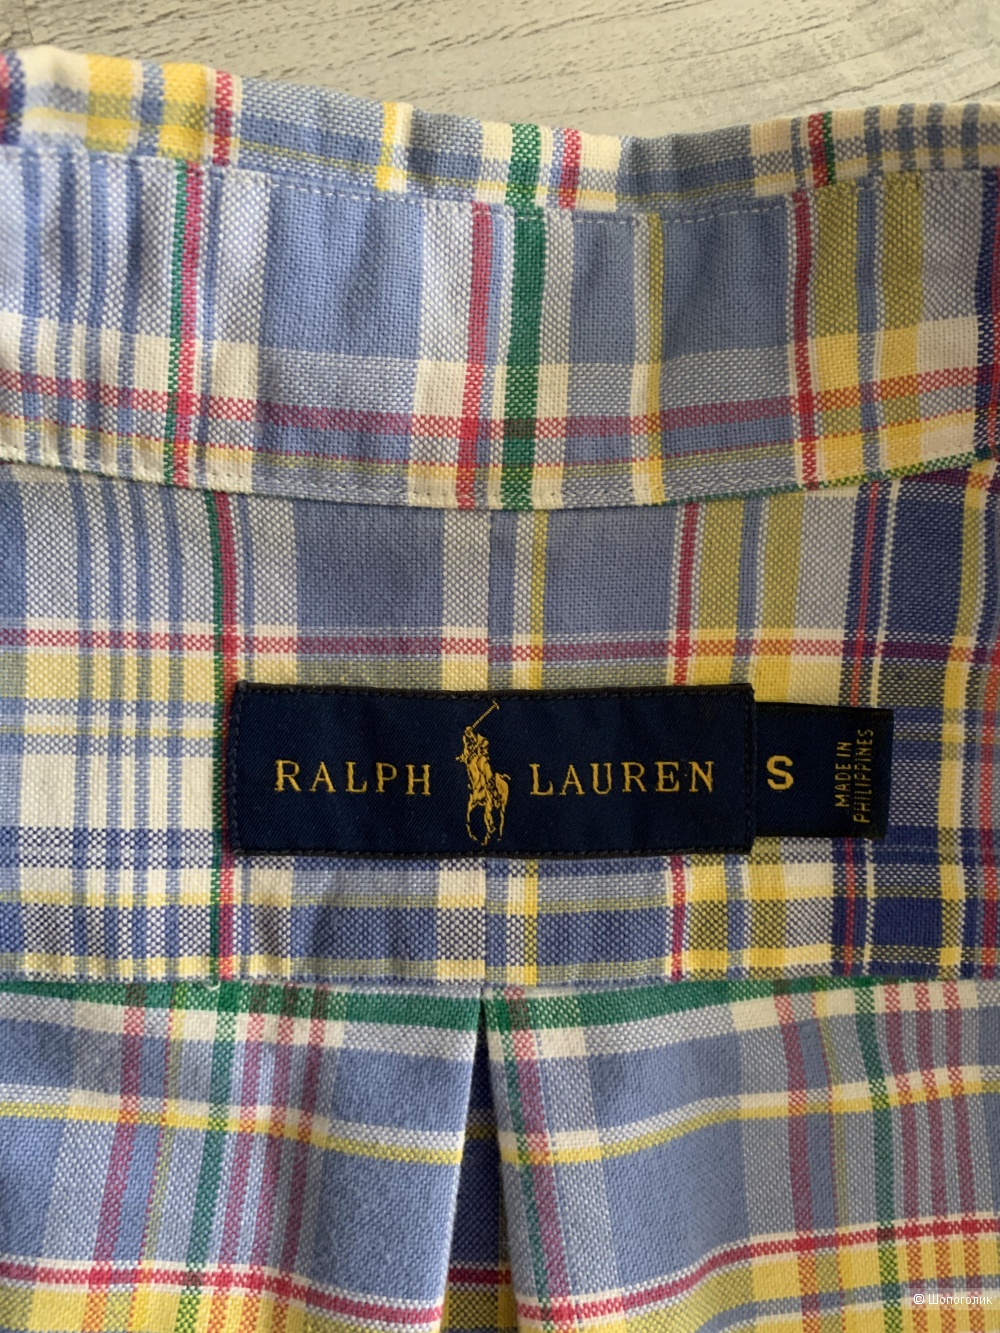 Рубашка мужская Ralph Lauren, р.44/46 рус.